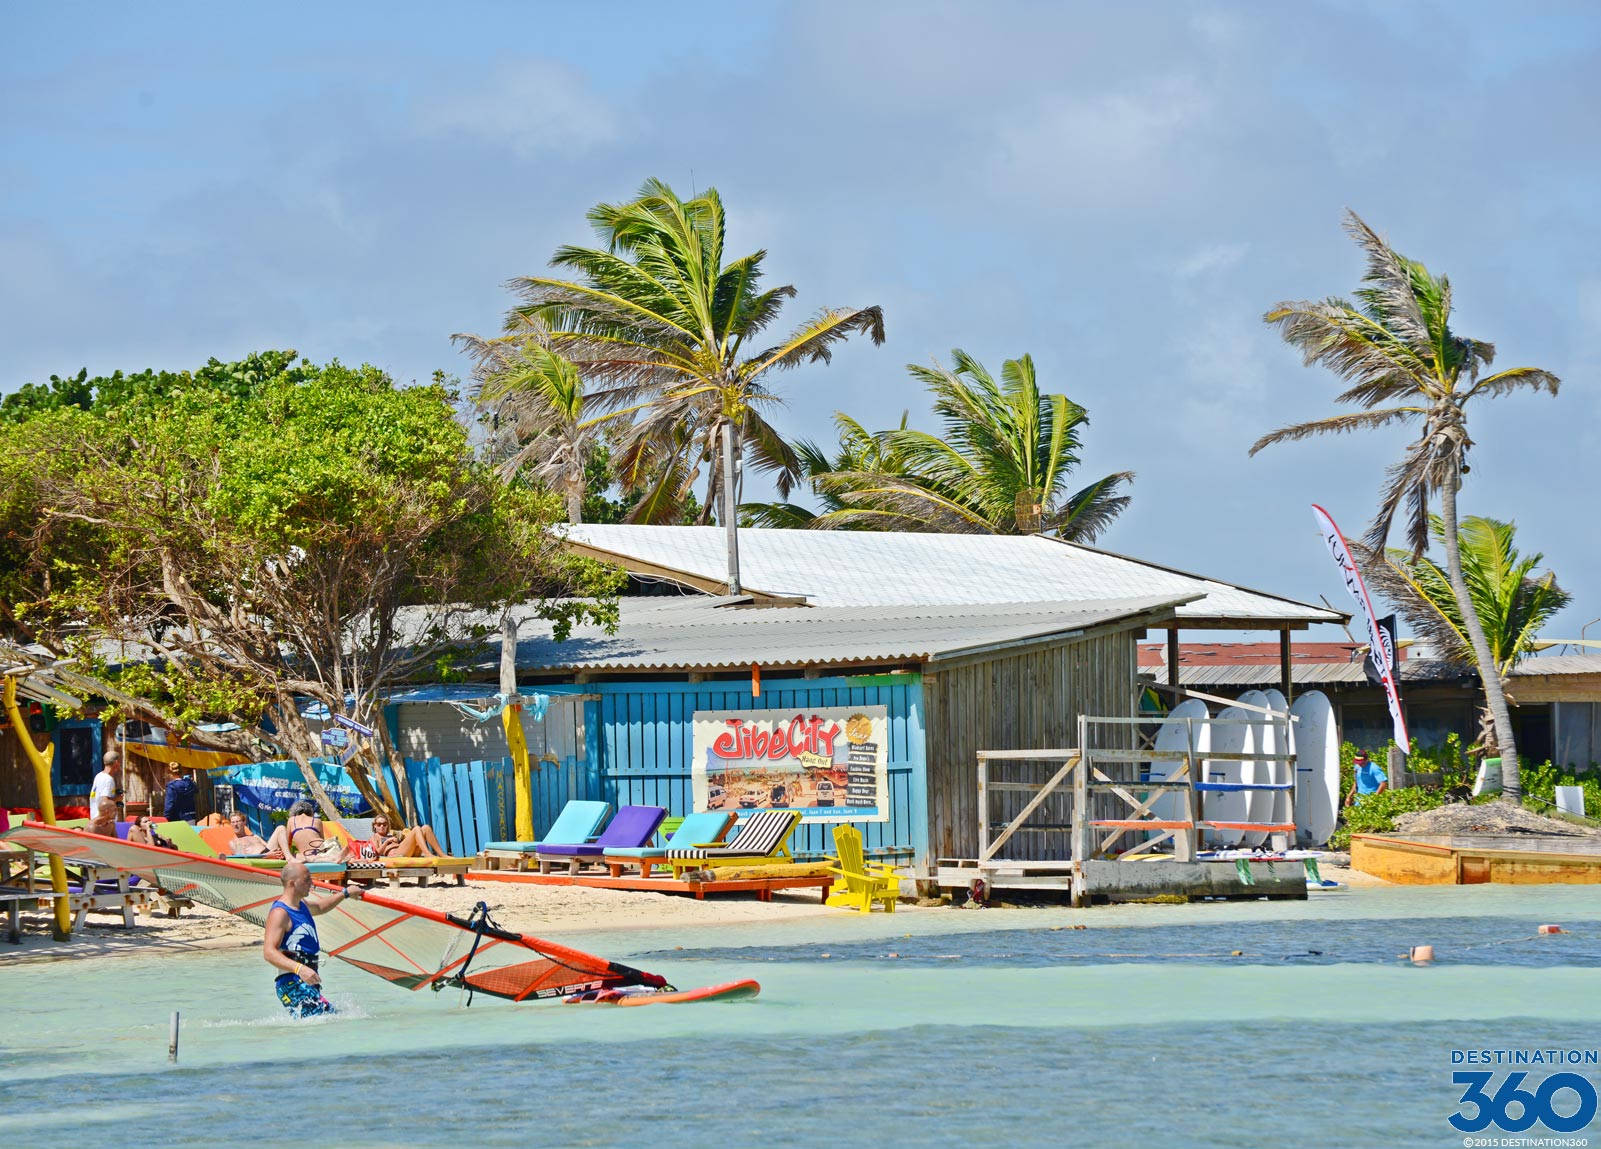 Bonairelac Bay (bahía De Lac En Bonaire) Es Una Hermosa Playa Ubicada En La Isla De Bonaire, En El Caribe. Sus Aguas Cristalinas Y Su Arena Blanca La Convierten En Un Destino Perfecto Para Relajarse Y Disfrutar De Actividades Acuáticas Como Buceo, Snorkel Y Windsurf. Fondo de pantalla